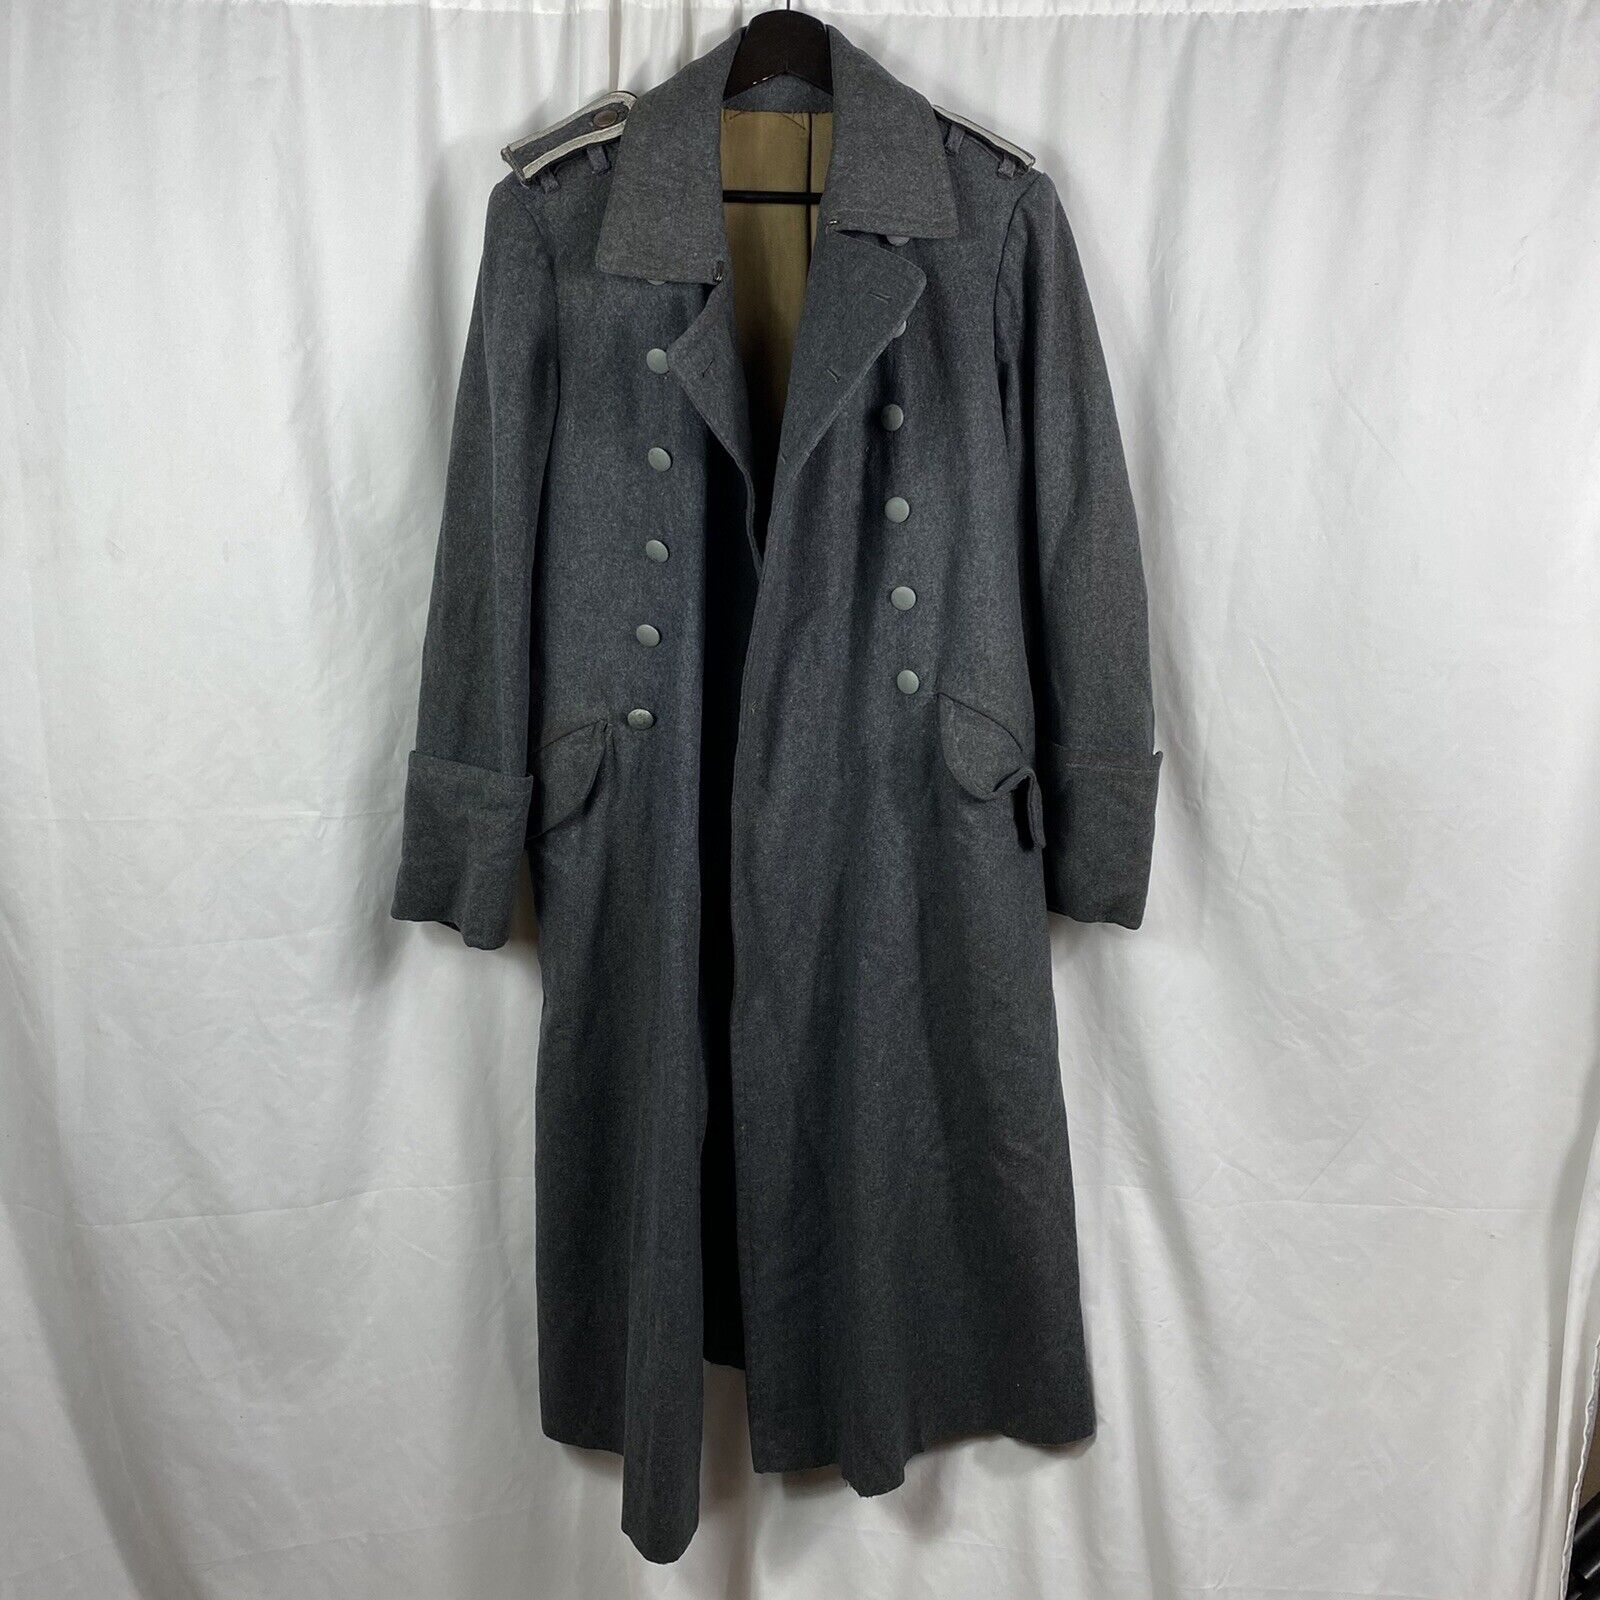 Authentic WWII German Luftwaffe Greatcoat Trenchcoat Original Coat